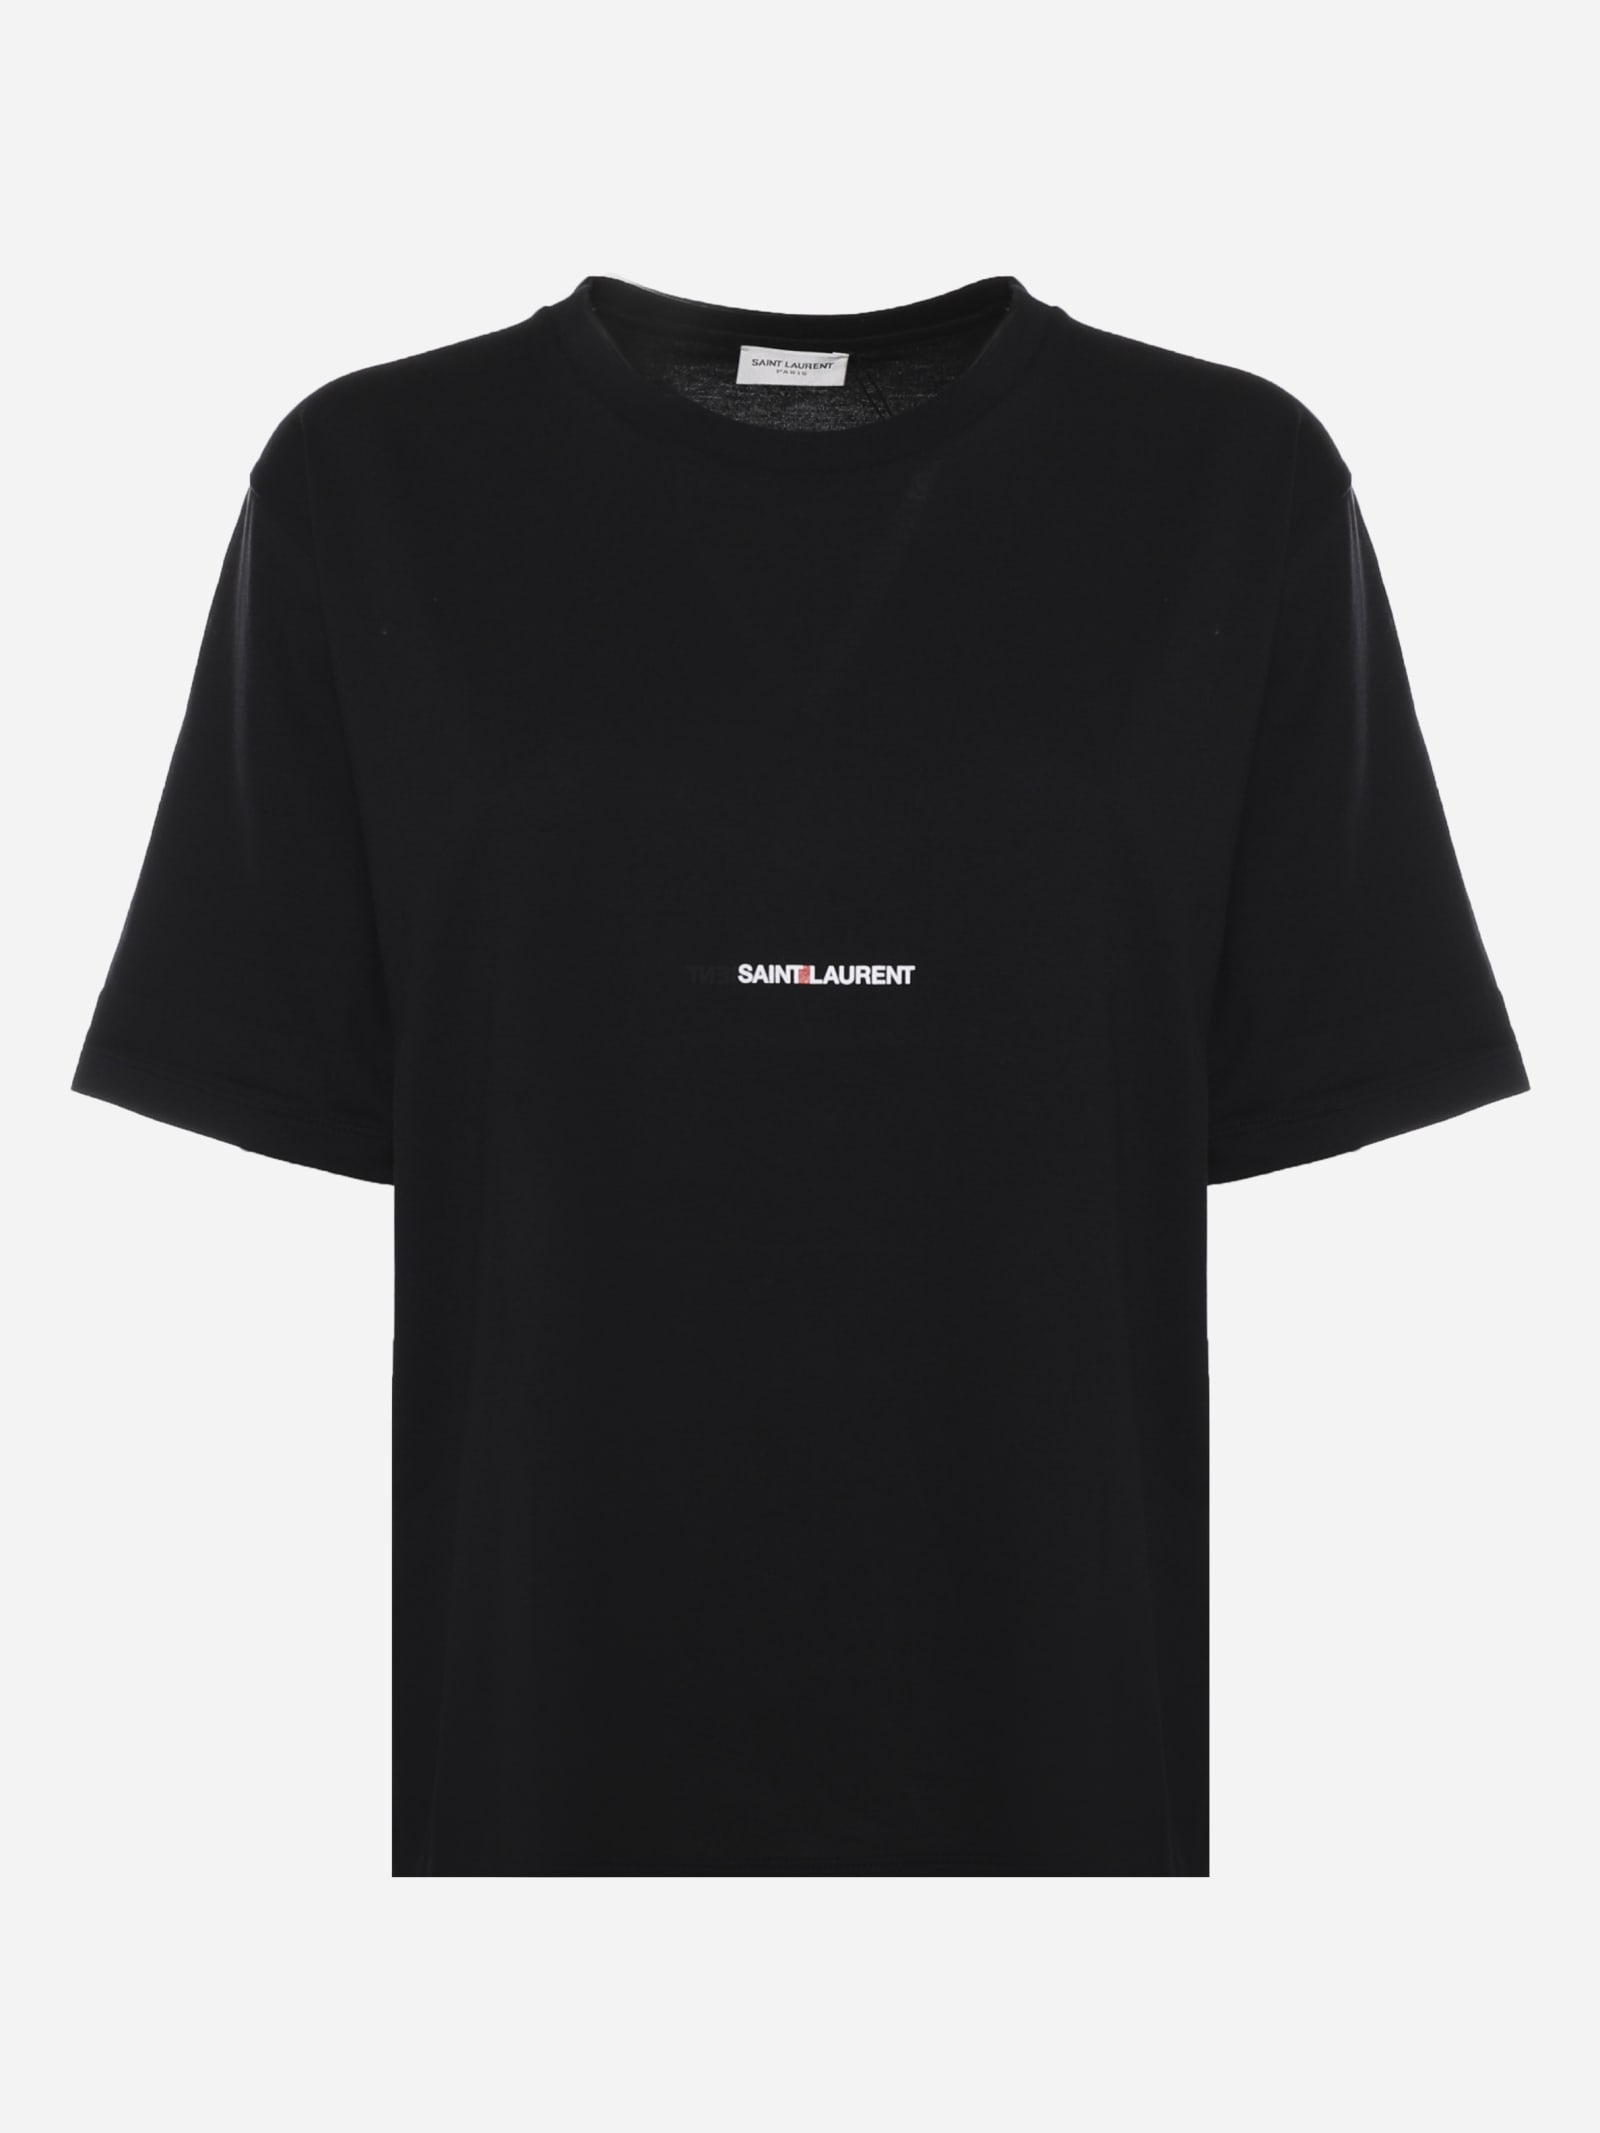 Saint Laurent Black Cotton T Shirt With Logo Print